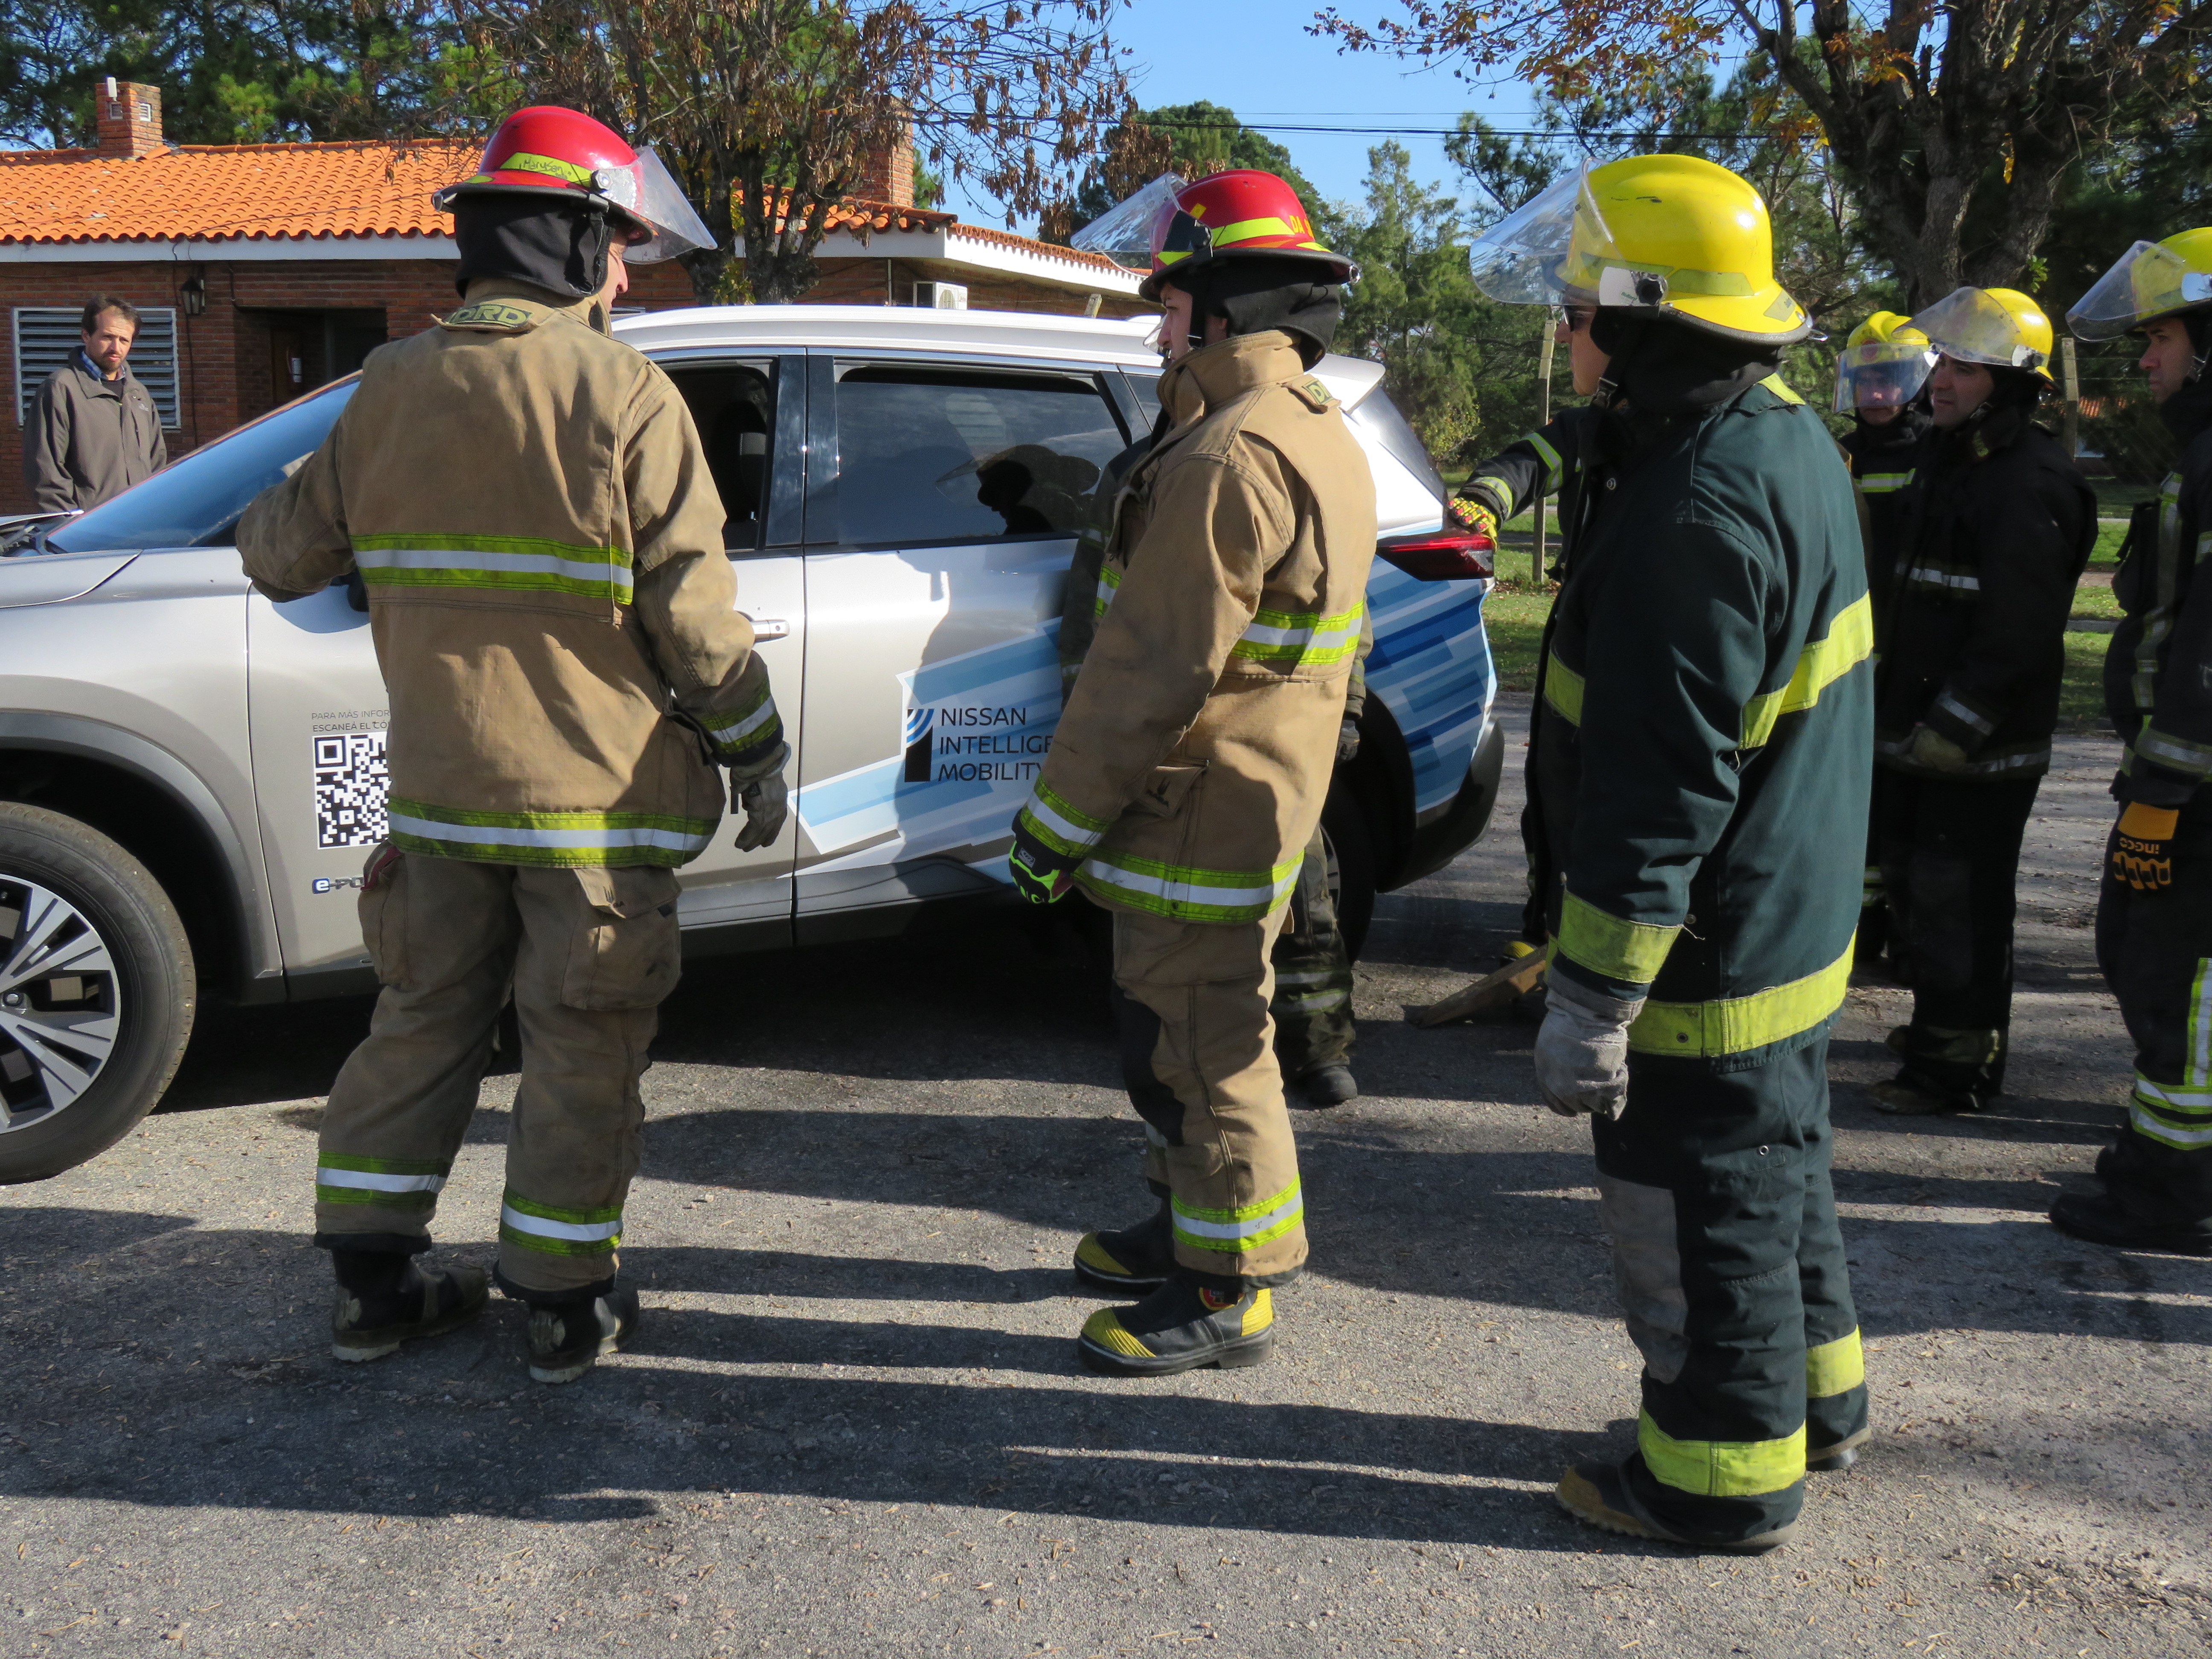 IMG_20230511_3846-alTVGKlf.jpg - El pasado jueves 11 de mayo culminó la &#034;Capacitación para bomberos sobre manejo de incidentes relacionados con la movilidad eléctrica&#034; en donde se capacitaron a 25 bomberos en la Base Aérea de Santa Bernardina del departamento de Durazno. Esta capacitación es la continuación del primer curso regional que organizó la plataforma MOVE del Programa de la Naciones Unidas para el Medio Ambiente a finales de 2022 en Paraguay, donde participaron y se formaron dos bomberos instructores de Uruguay.